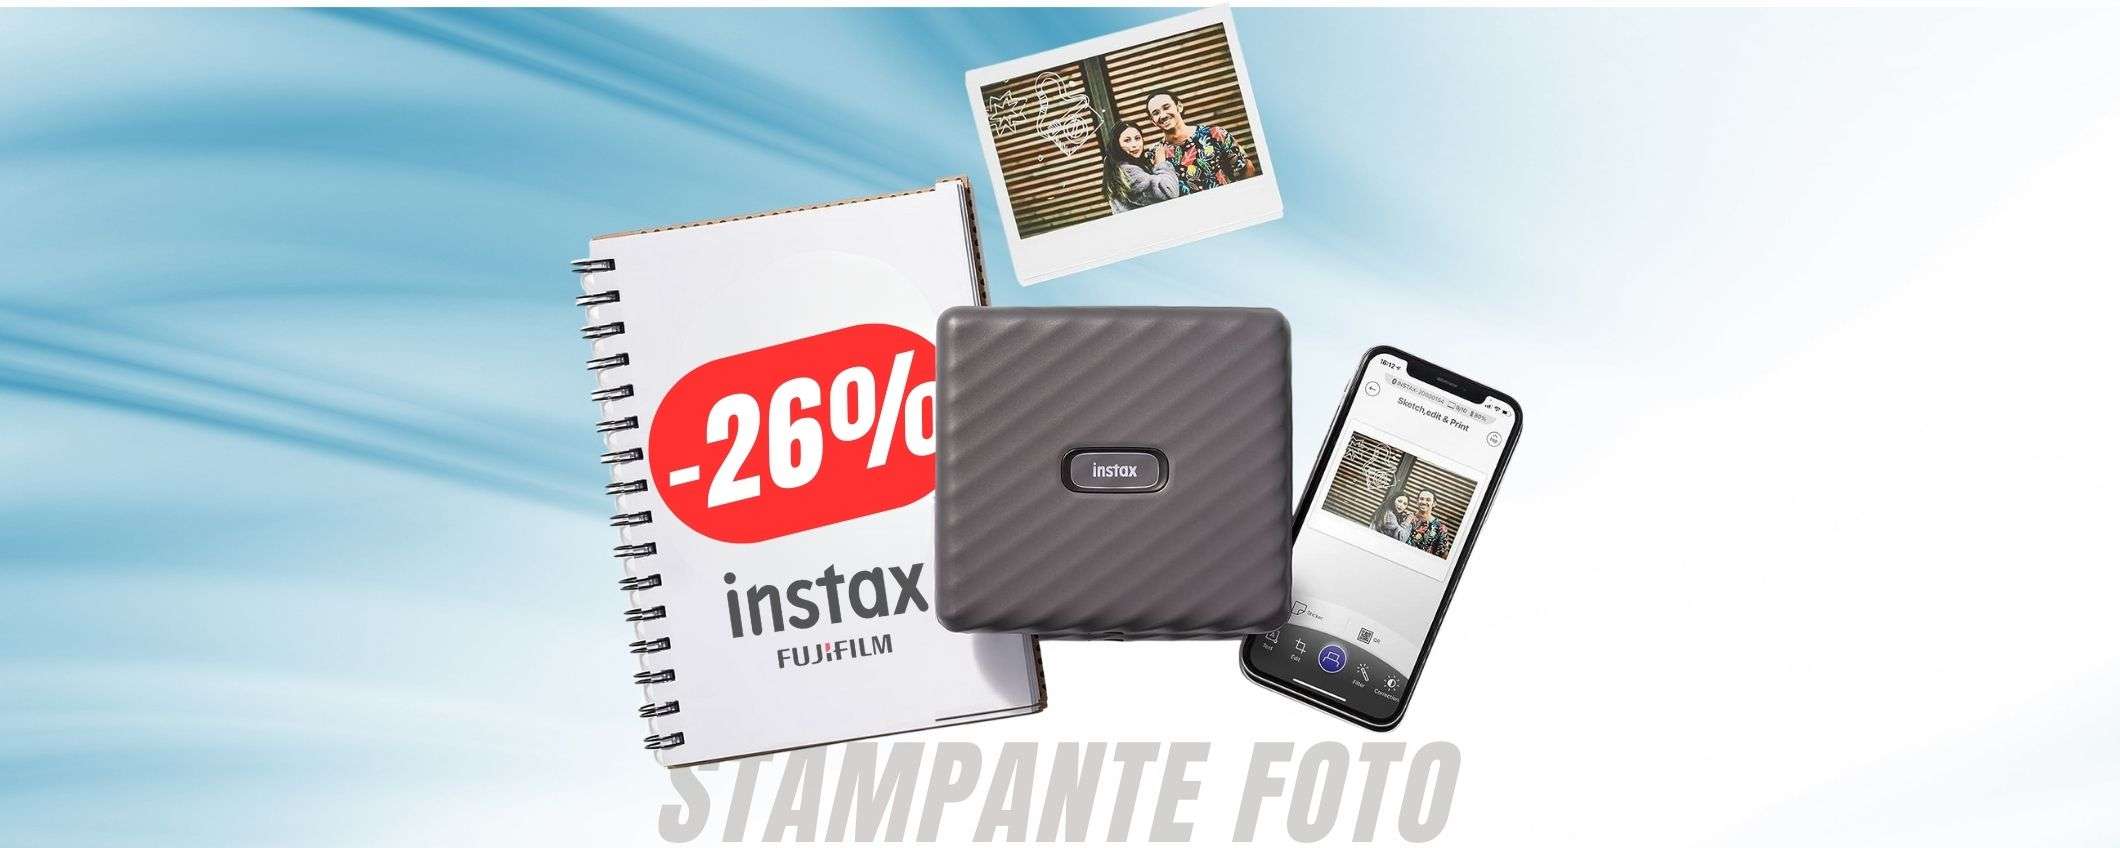 Trasforma qualsiasi foto in una Polaroid con questa stampante in OFFERTA (-26%)!